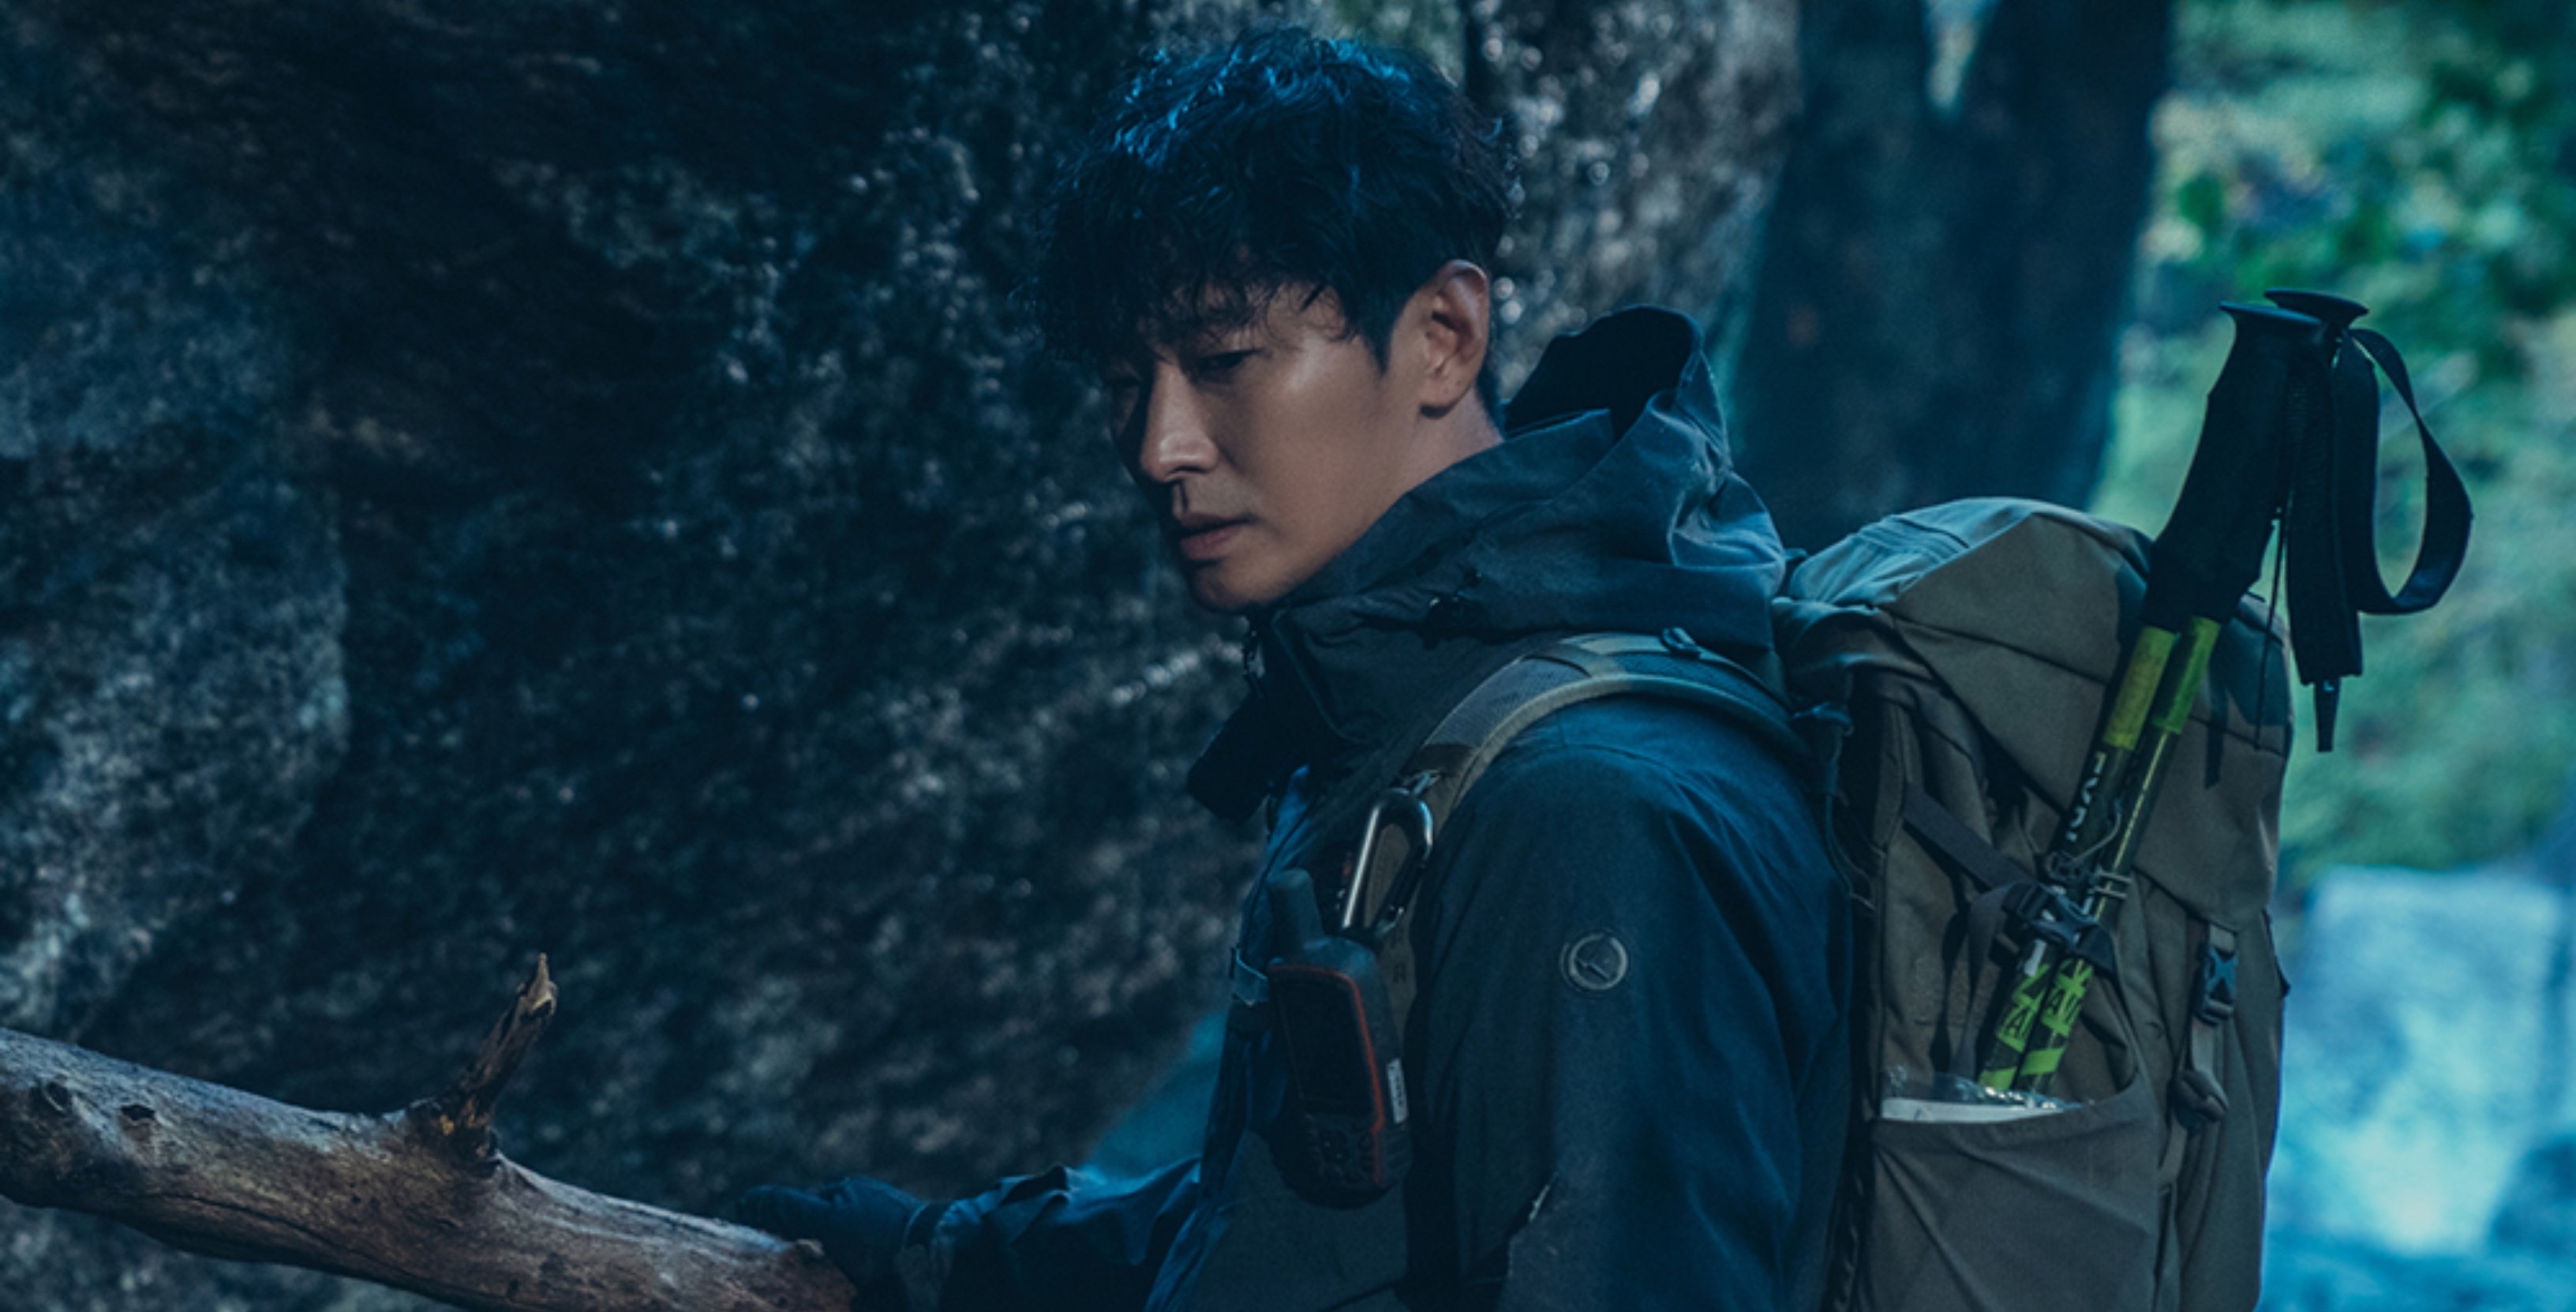 Actor Ju Ji-hoon as Kang Hyun-jo for 'Jirisan' K-drama wearing hiking gear